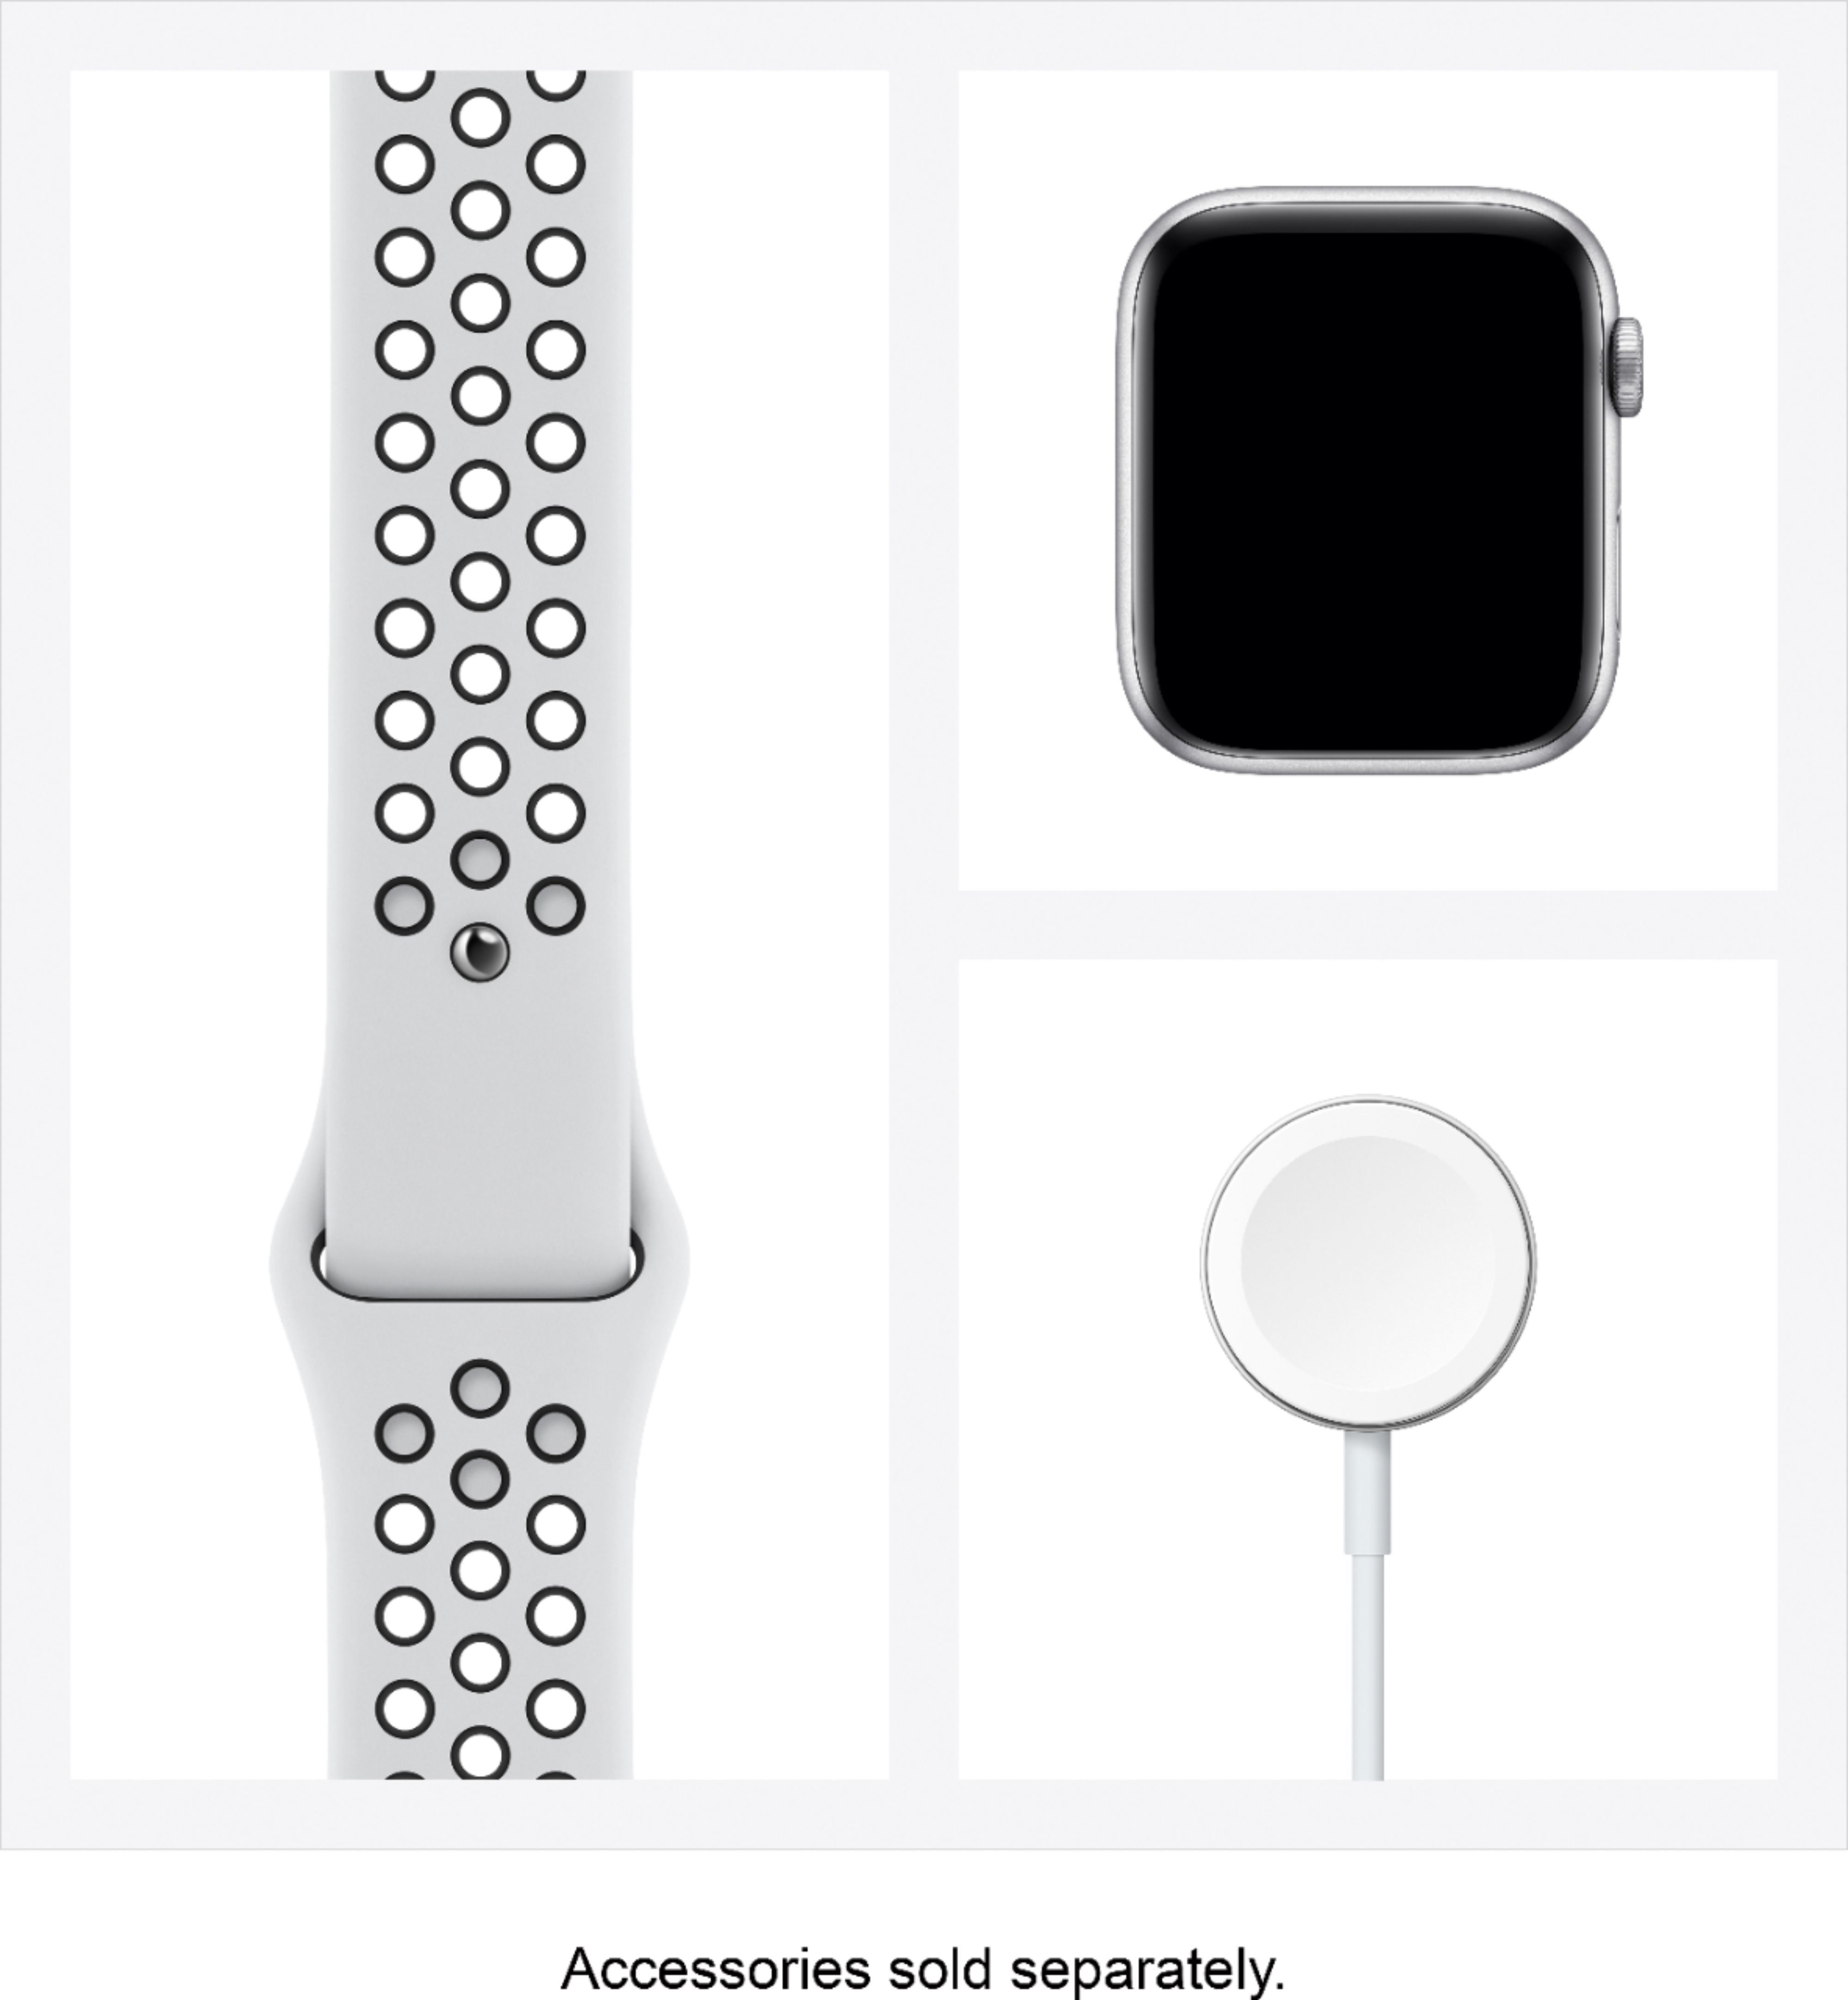 スマートフォン/携帯電話 その他 Best Buy: Apple Watch Nike Series 6 (GPS) 44mm Silver Aluminum 